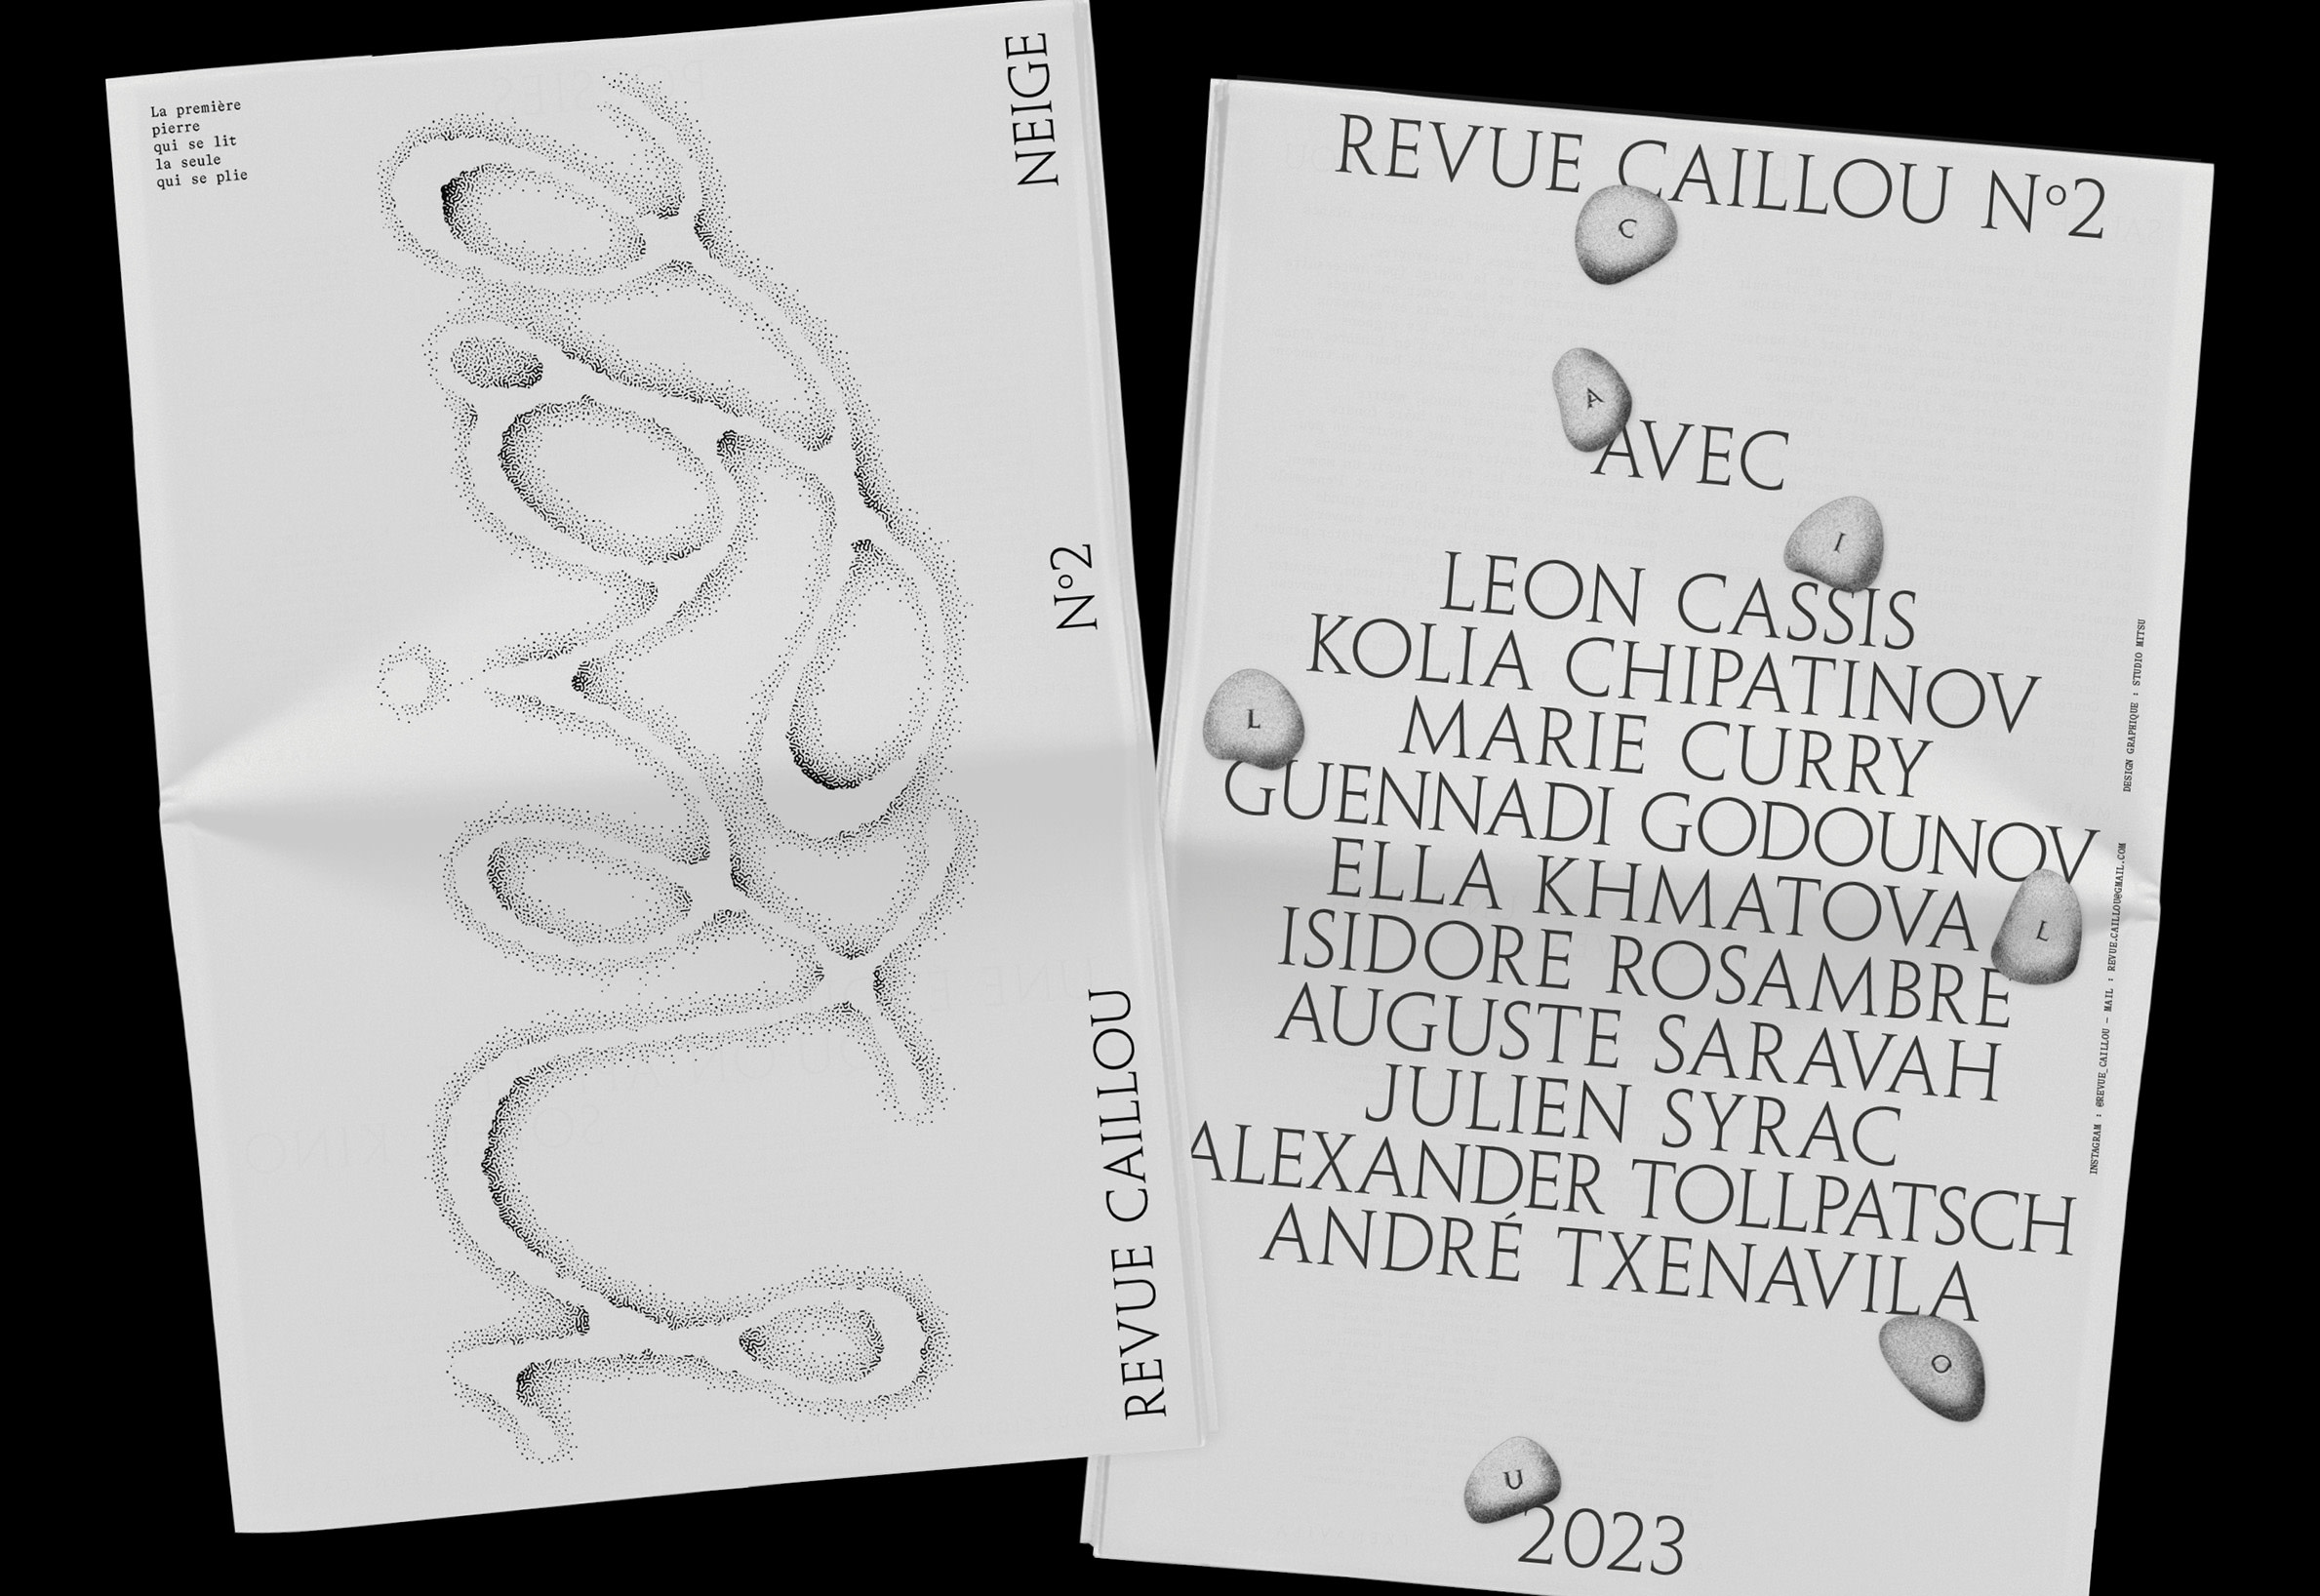 Revue Caillou n°2 design by studio mitsu